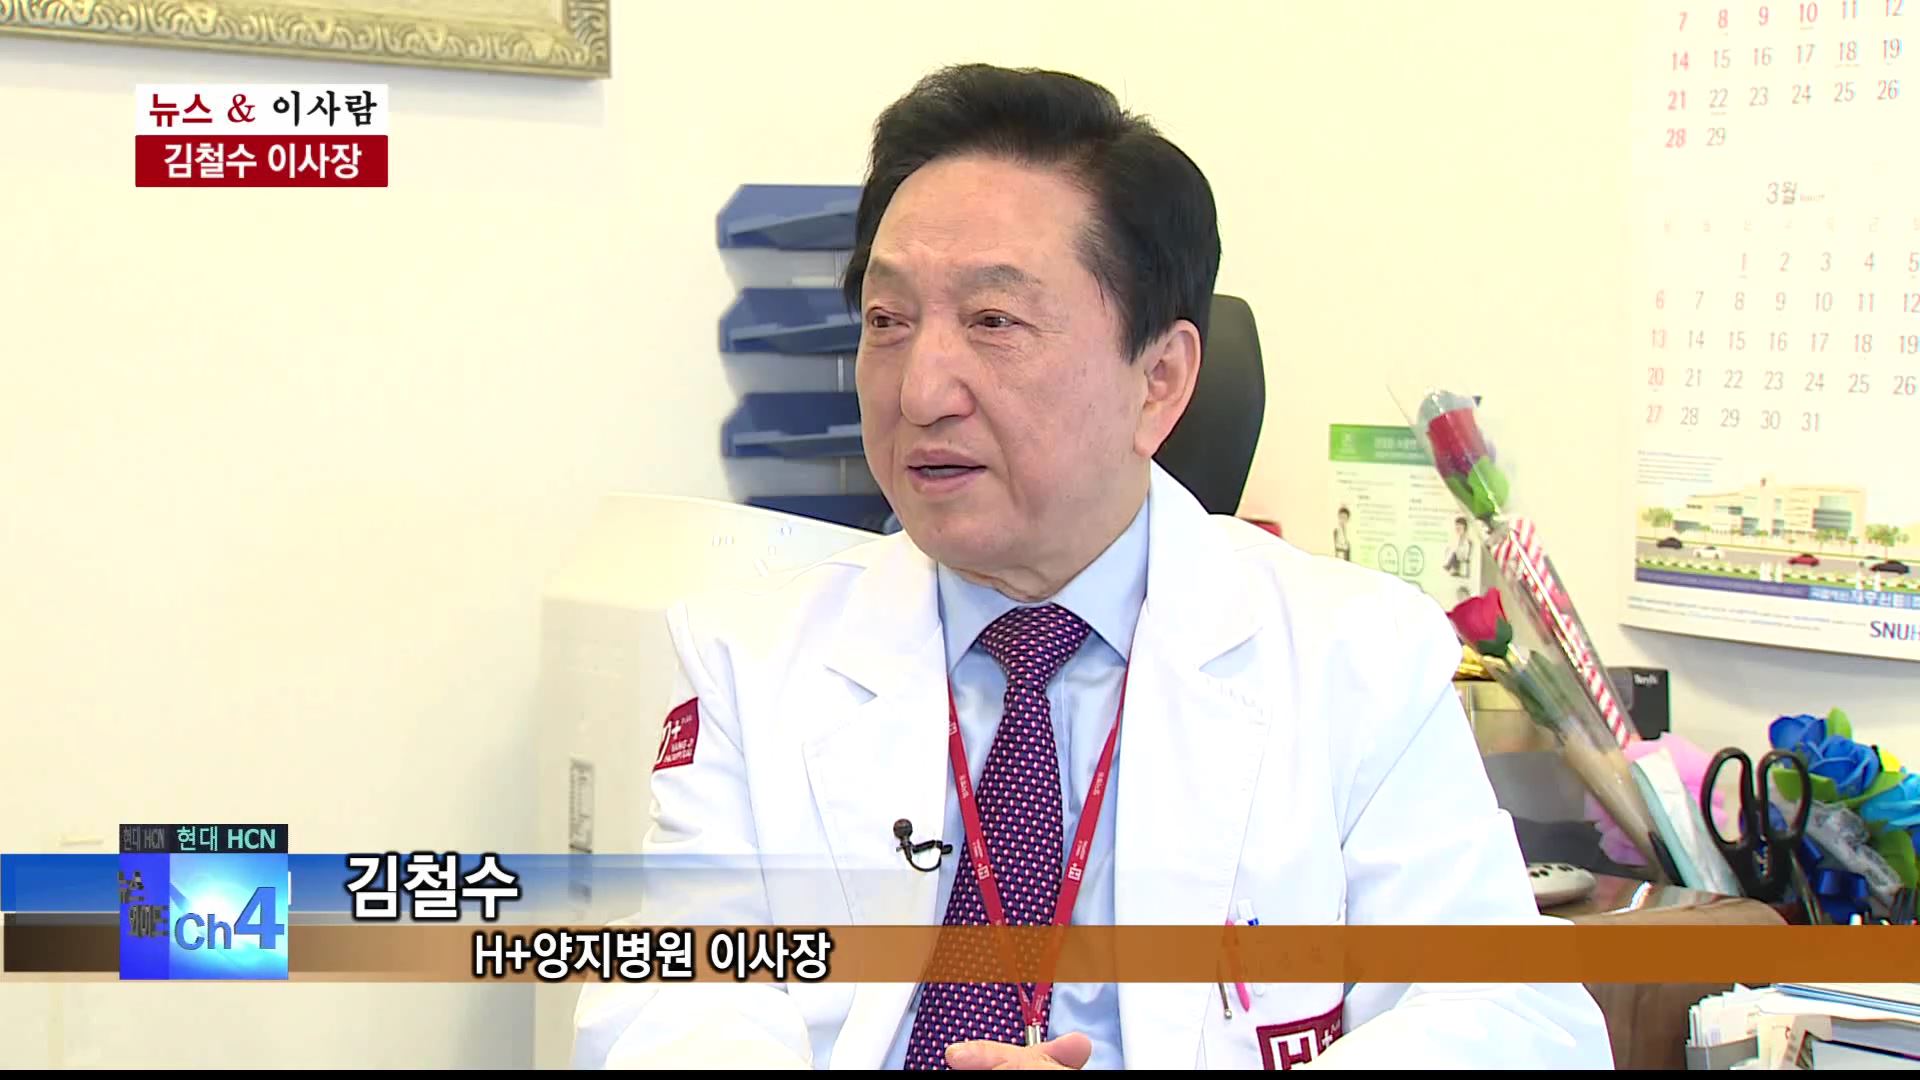  H+양지병원 40년, 김철수 이사장